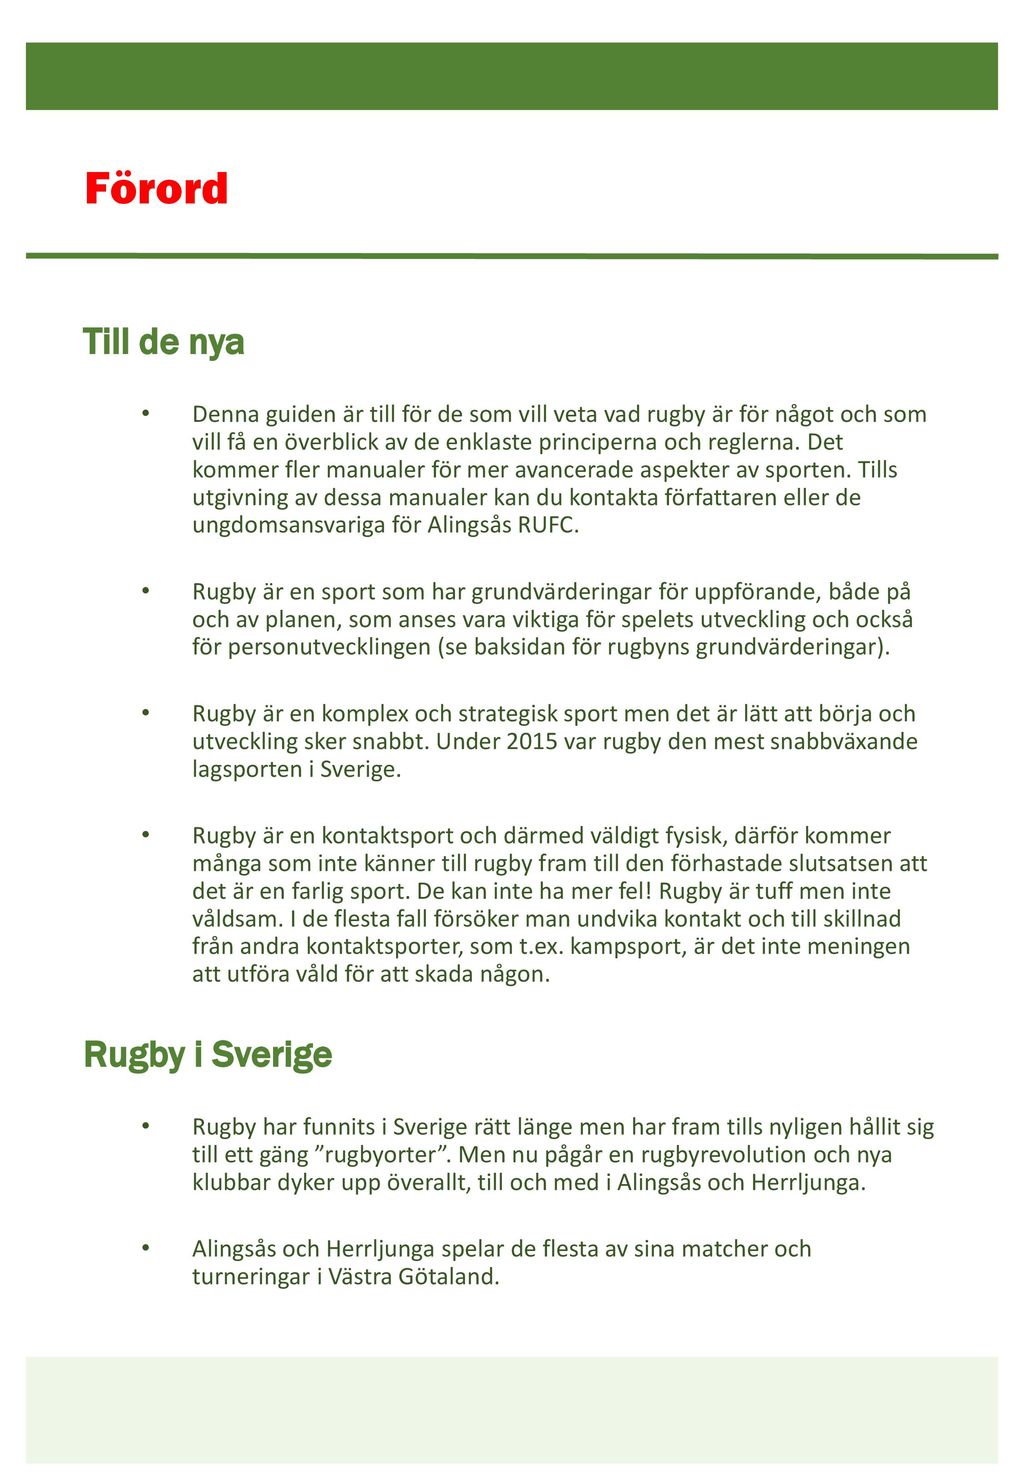 Förord Till de nya Rugby i Sverige